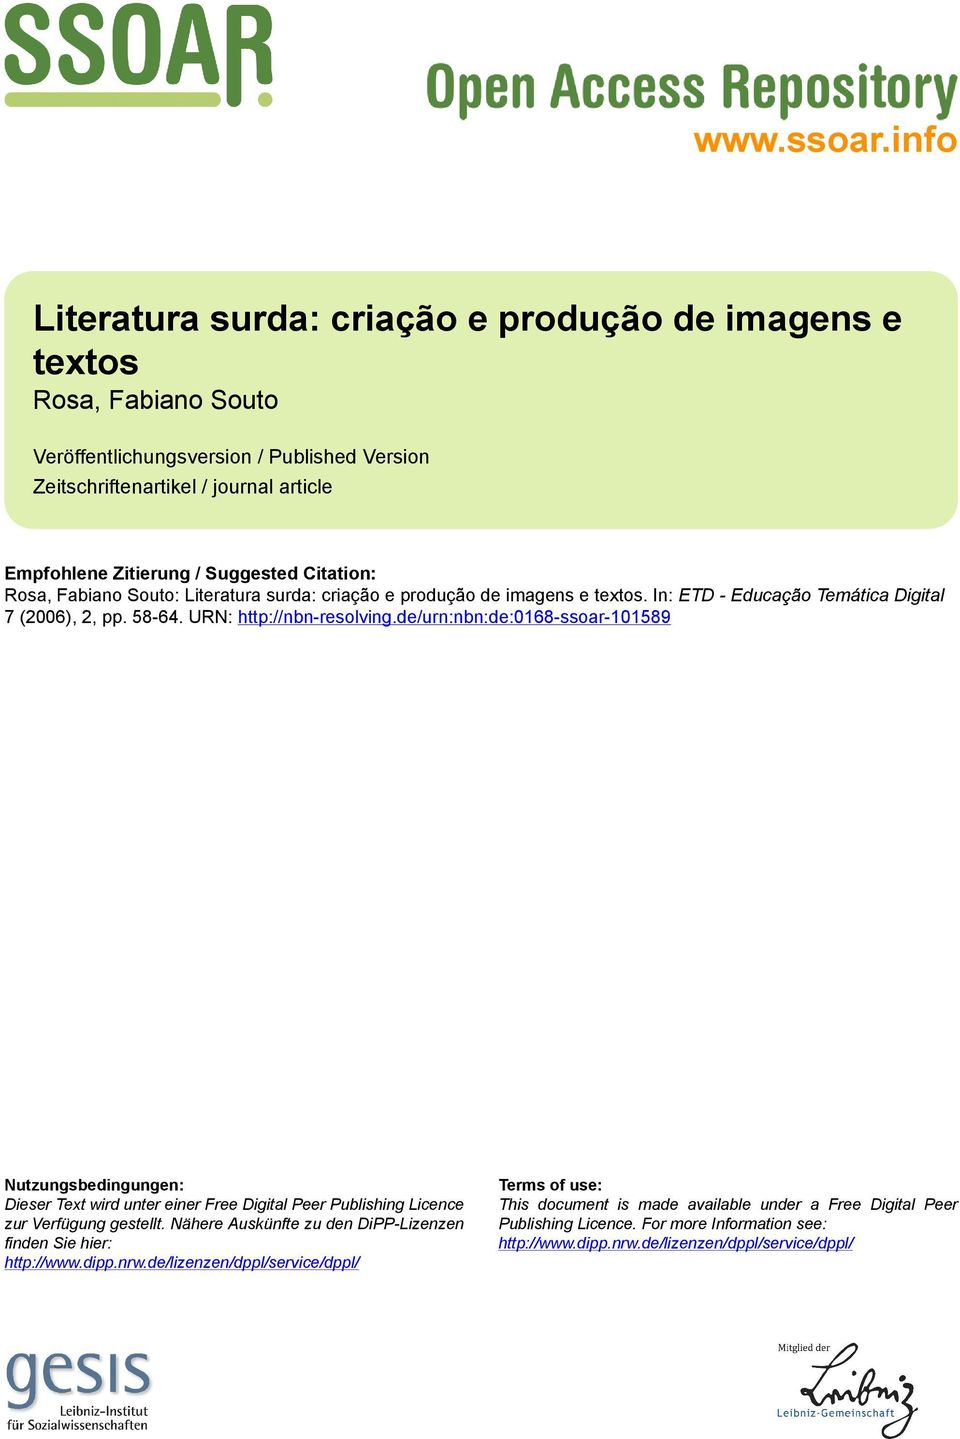 Citation: Rosa, Fabiano Souto: Literatura surda: criação e produção de imagens e textos. In: ETD - Educação Temática Digital 7 (2006), 2, pp. 58-64. URN: http://nbn-resolving.